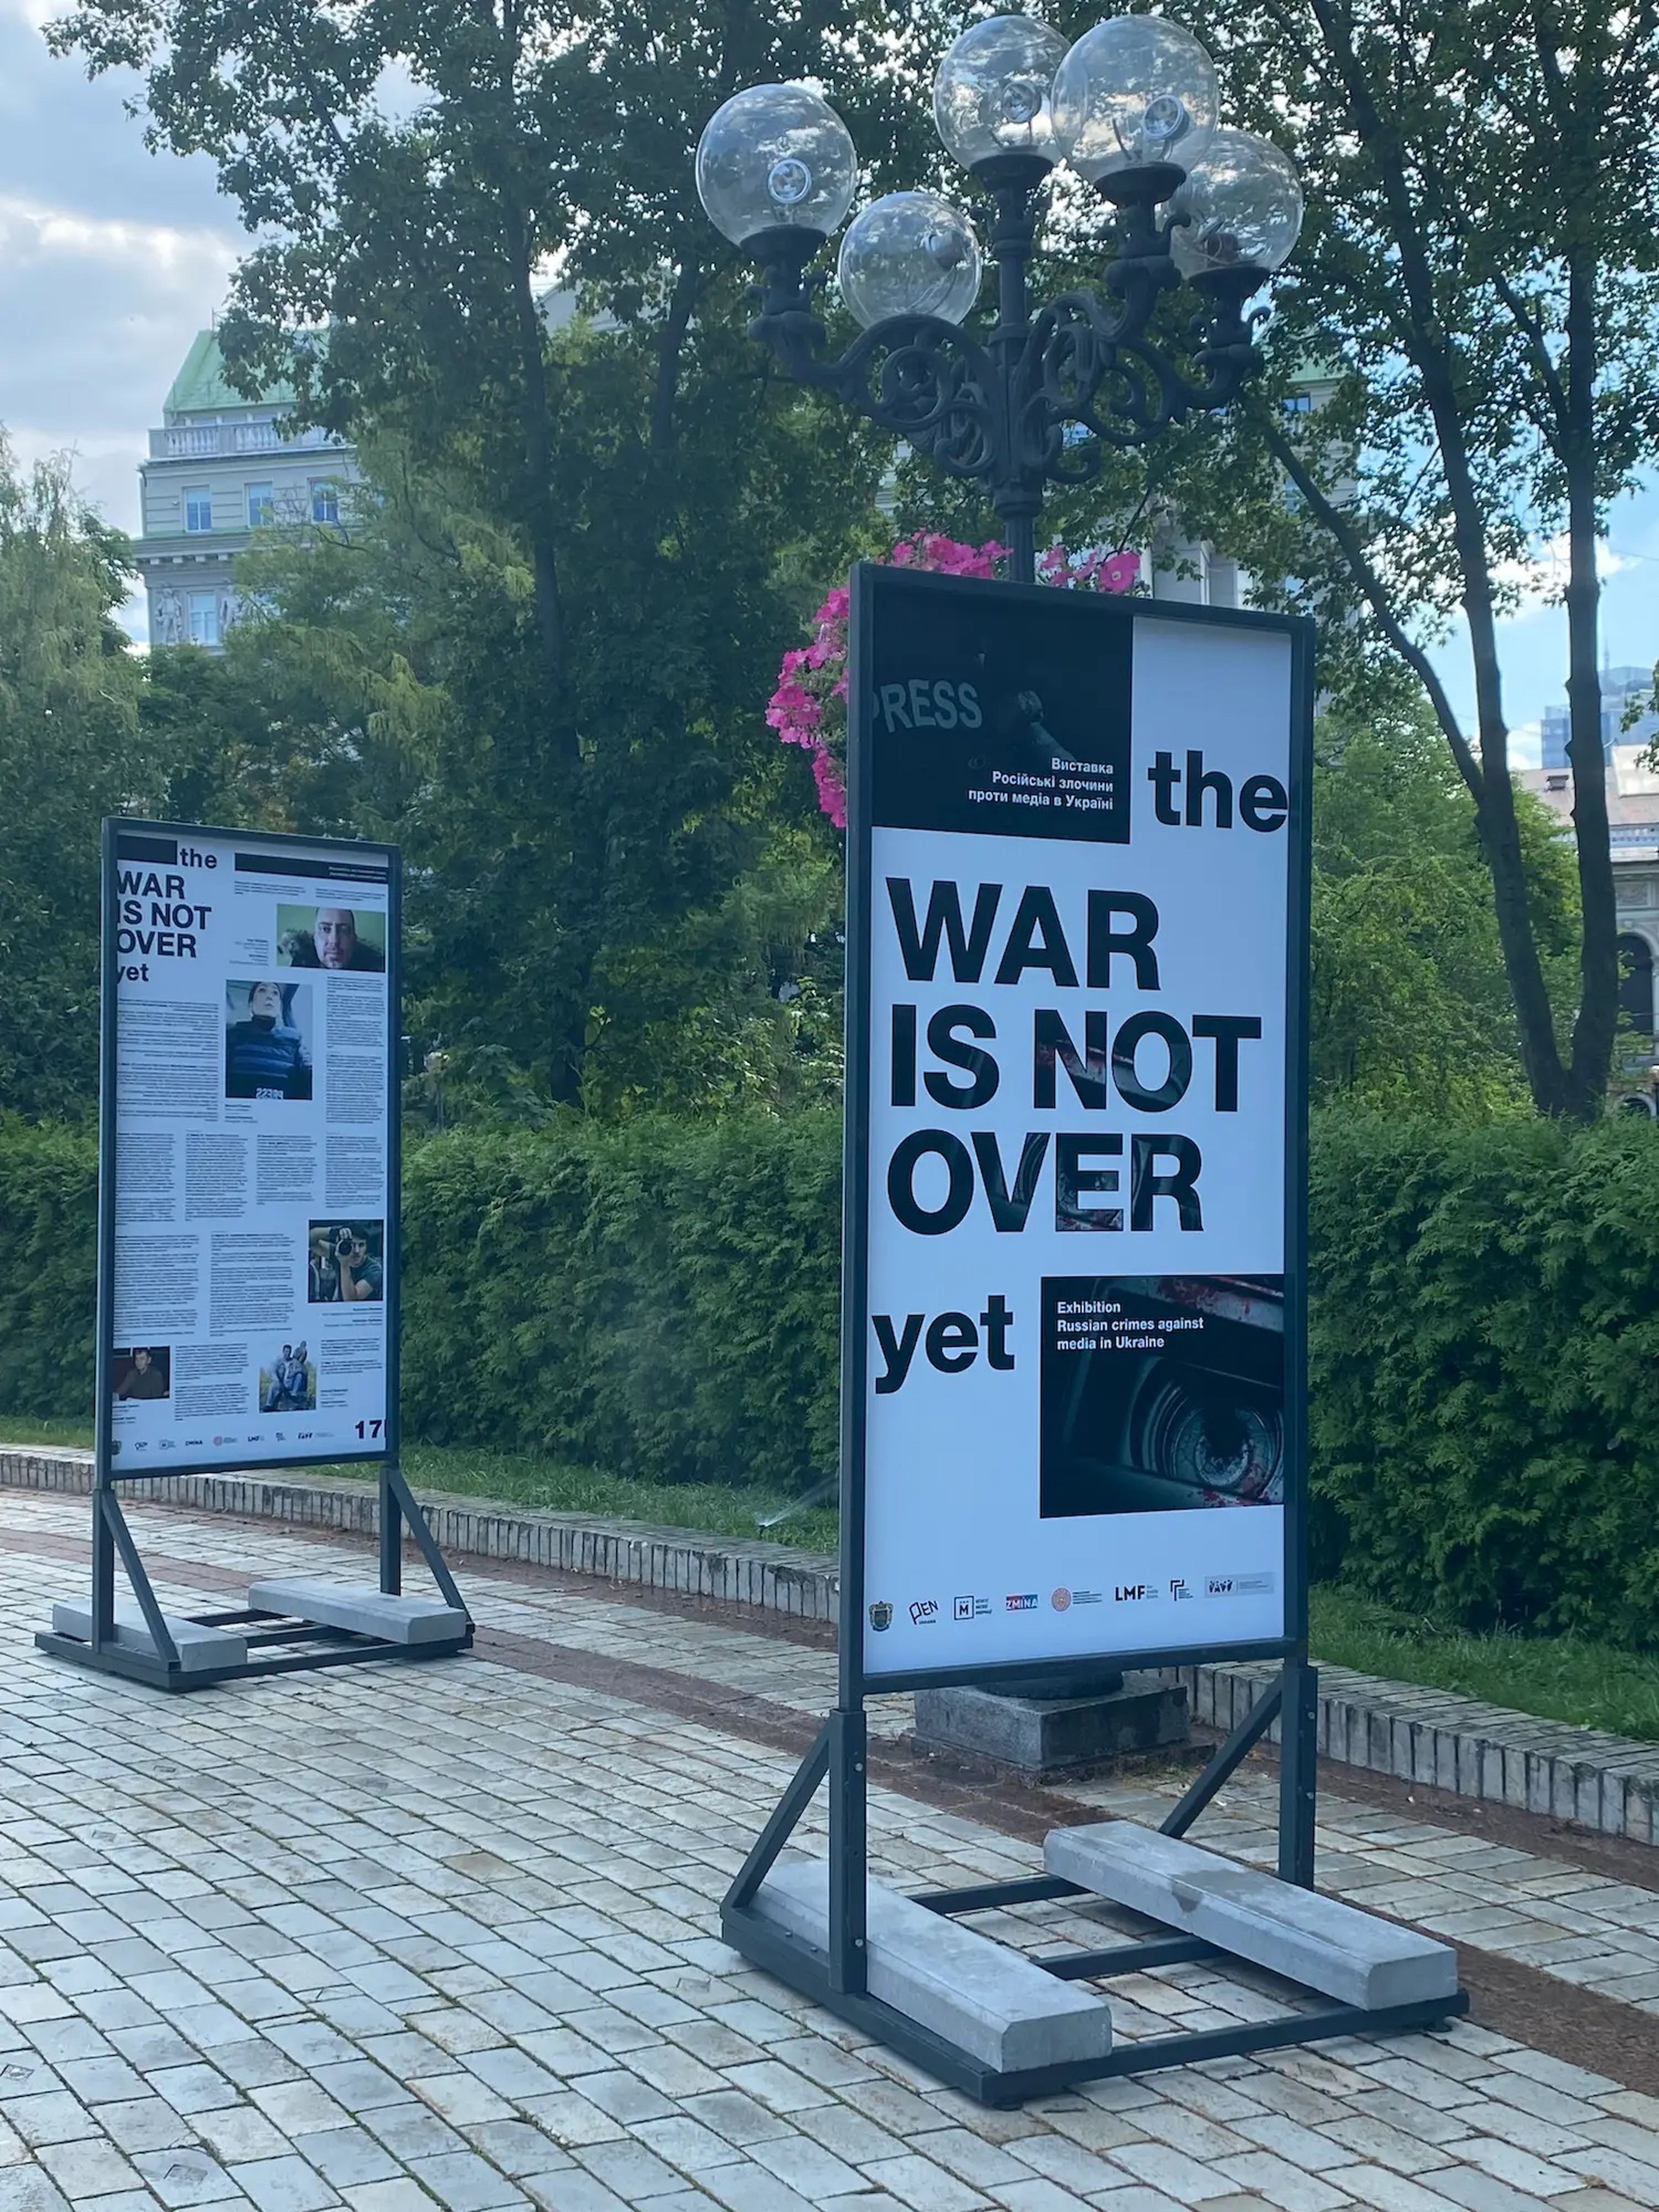 "La guerra no se ha acabado todavía", se lee en el cartel.